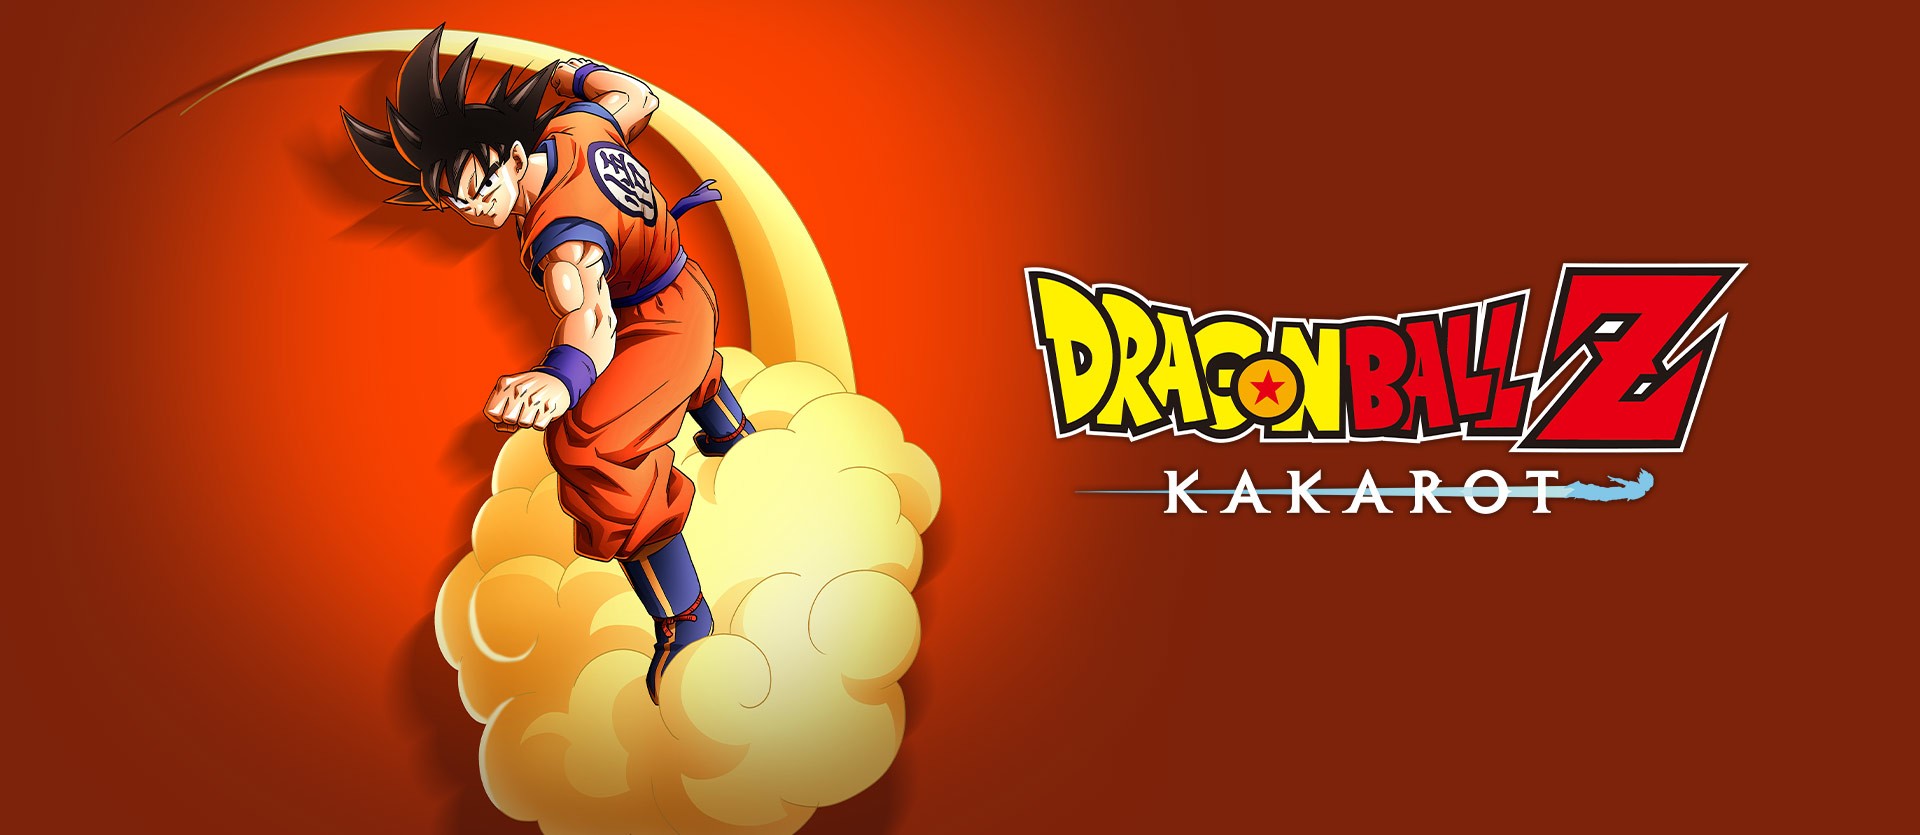 Dragon Ball Z Kakarot Dublagem Pt br at Dragon Ball Z: Kakarot